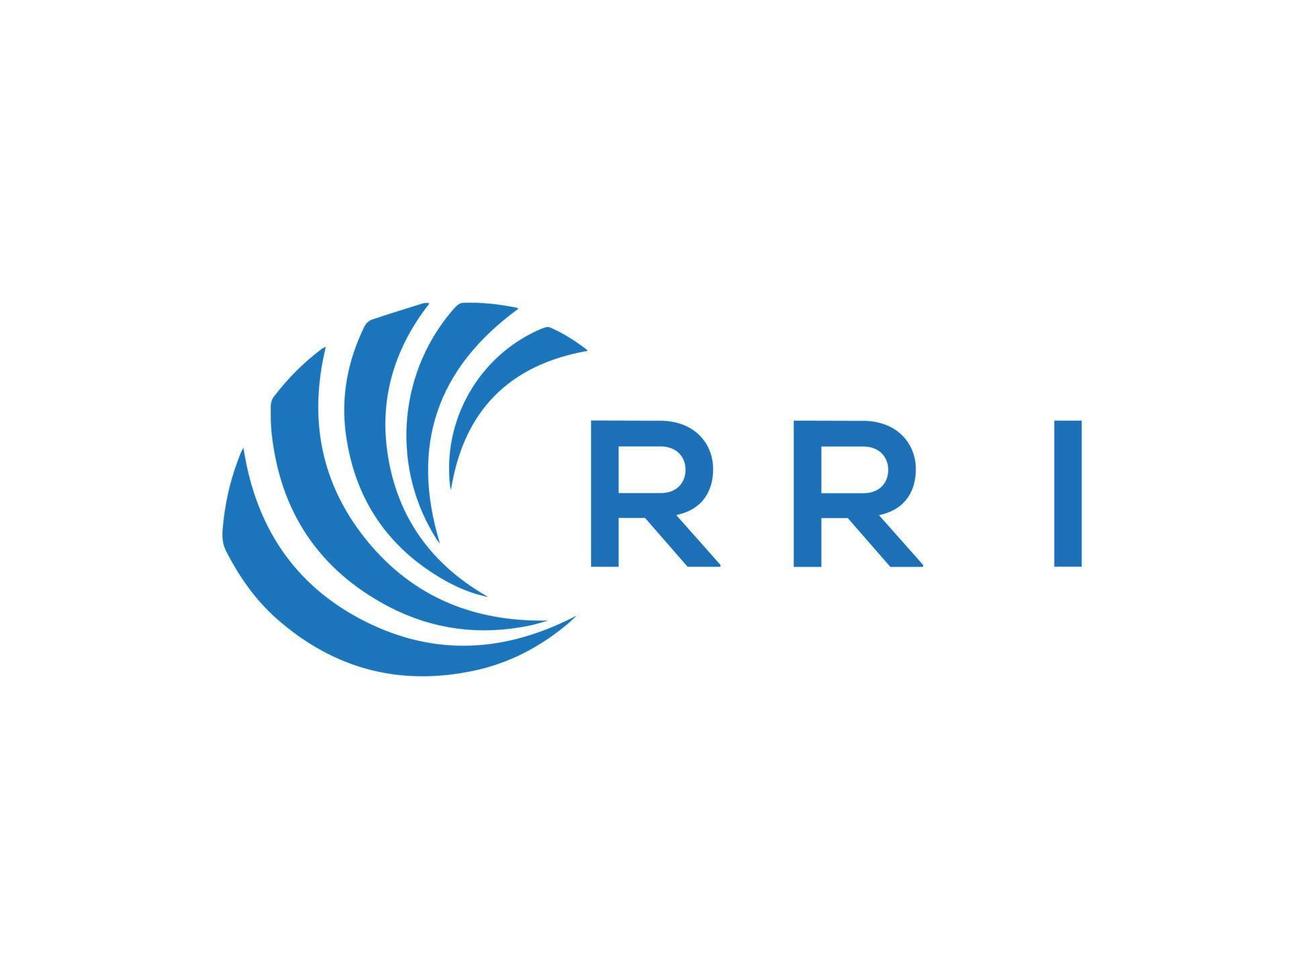 RRI letter logo design on white background. RRI creative circle letter logo concept. RRI letter design. vector